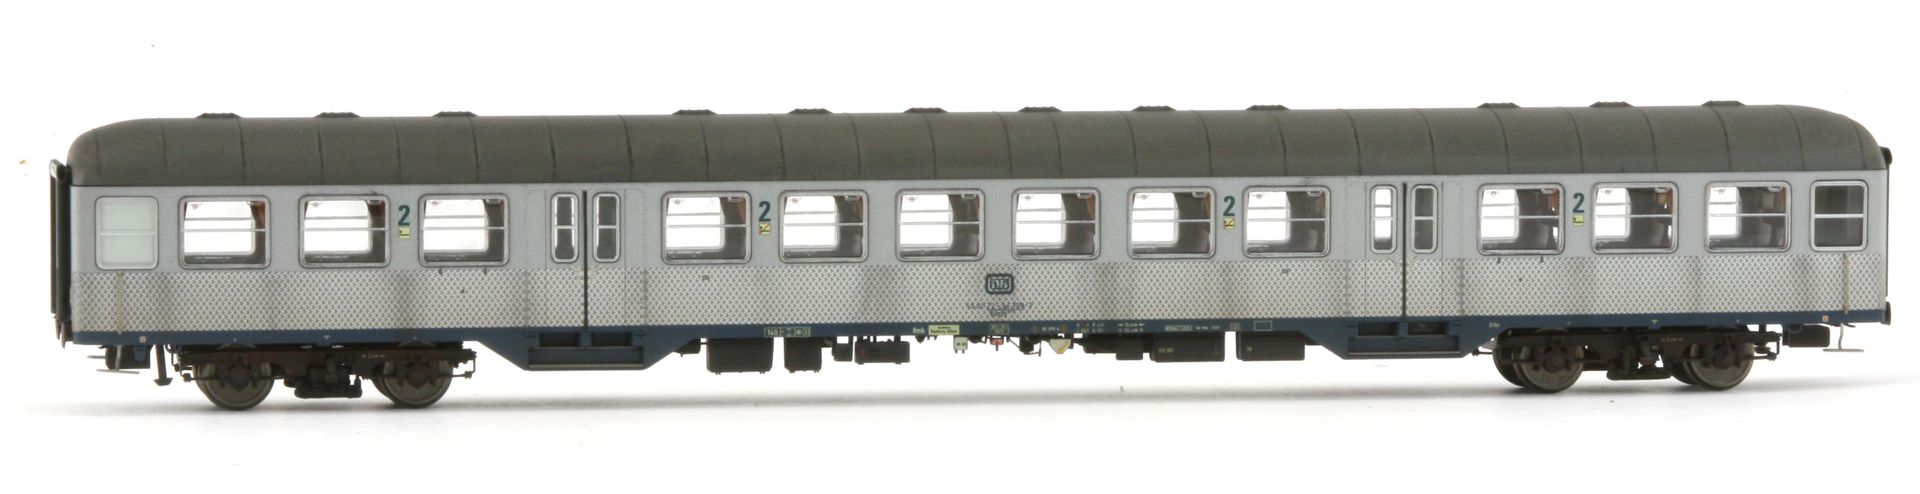 Saxonia 87053 - 4er Set Personenwagen 'Silberlinge', DB, Ep.IV, mit. Innenbel., gealtert